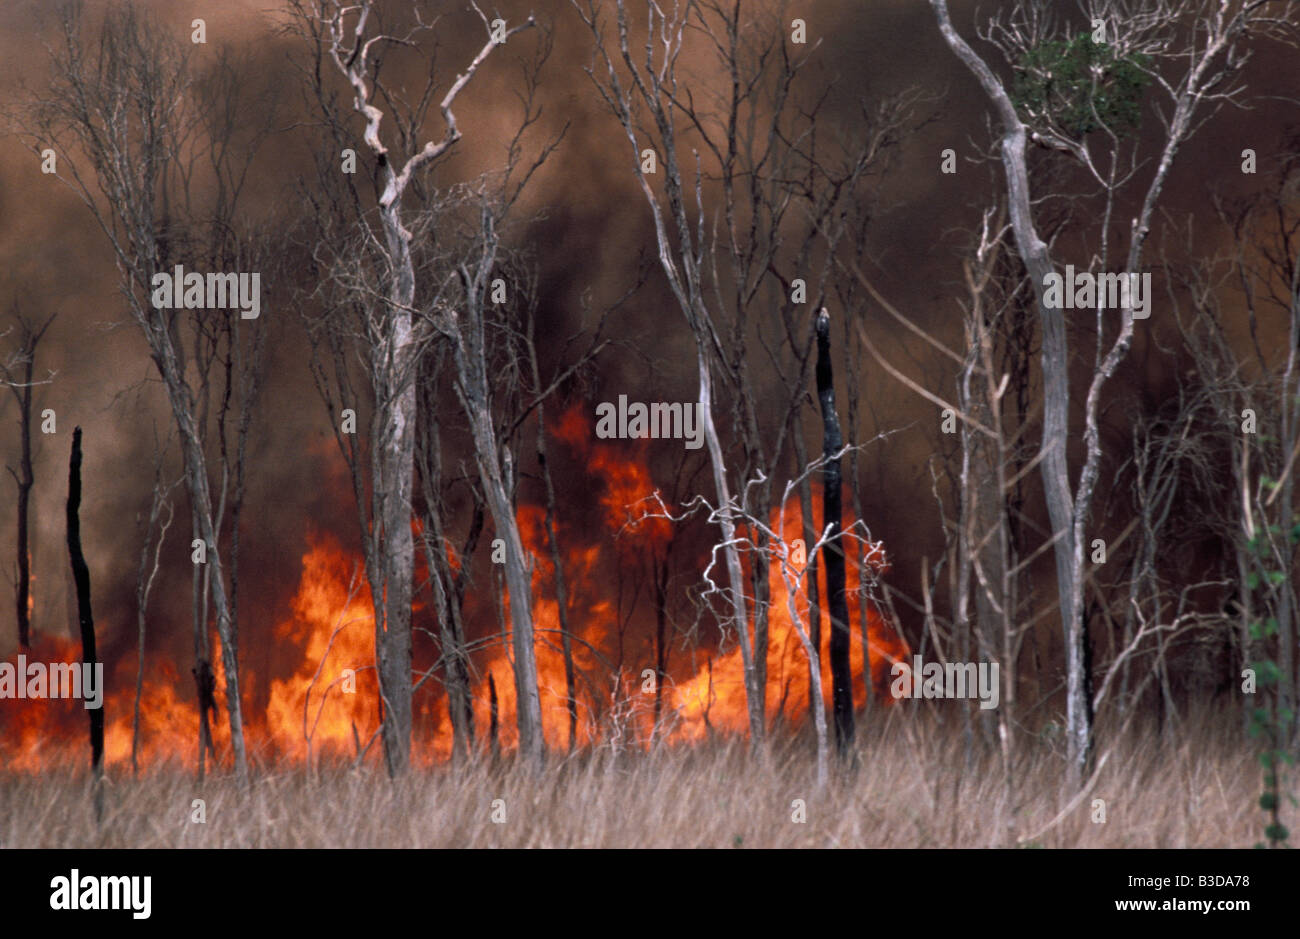 Feu de forêts BURNING FOREST FIRE sud sud Africa Madagascar African blaze blazing masterizzare masterizzazione bruciato burns conflagrazione dama Foto Stock